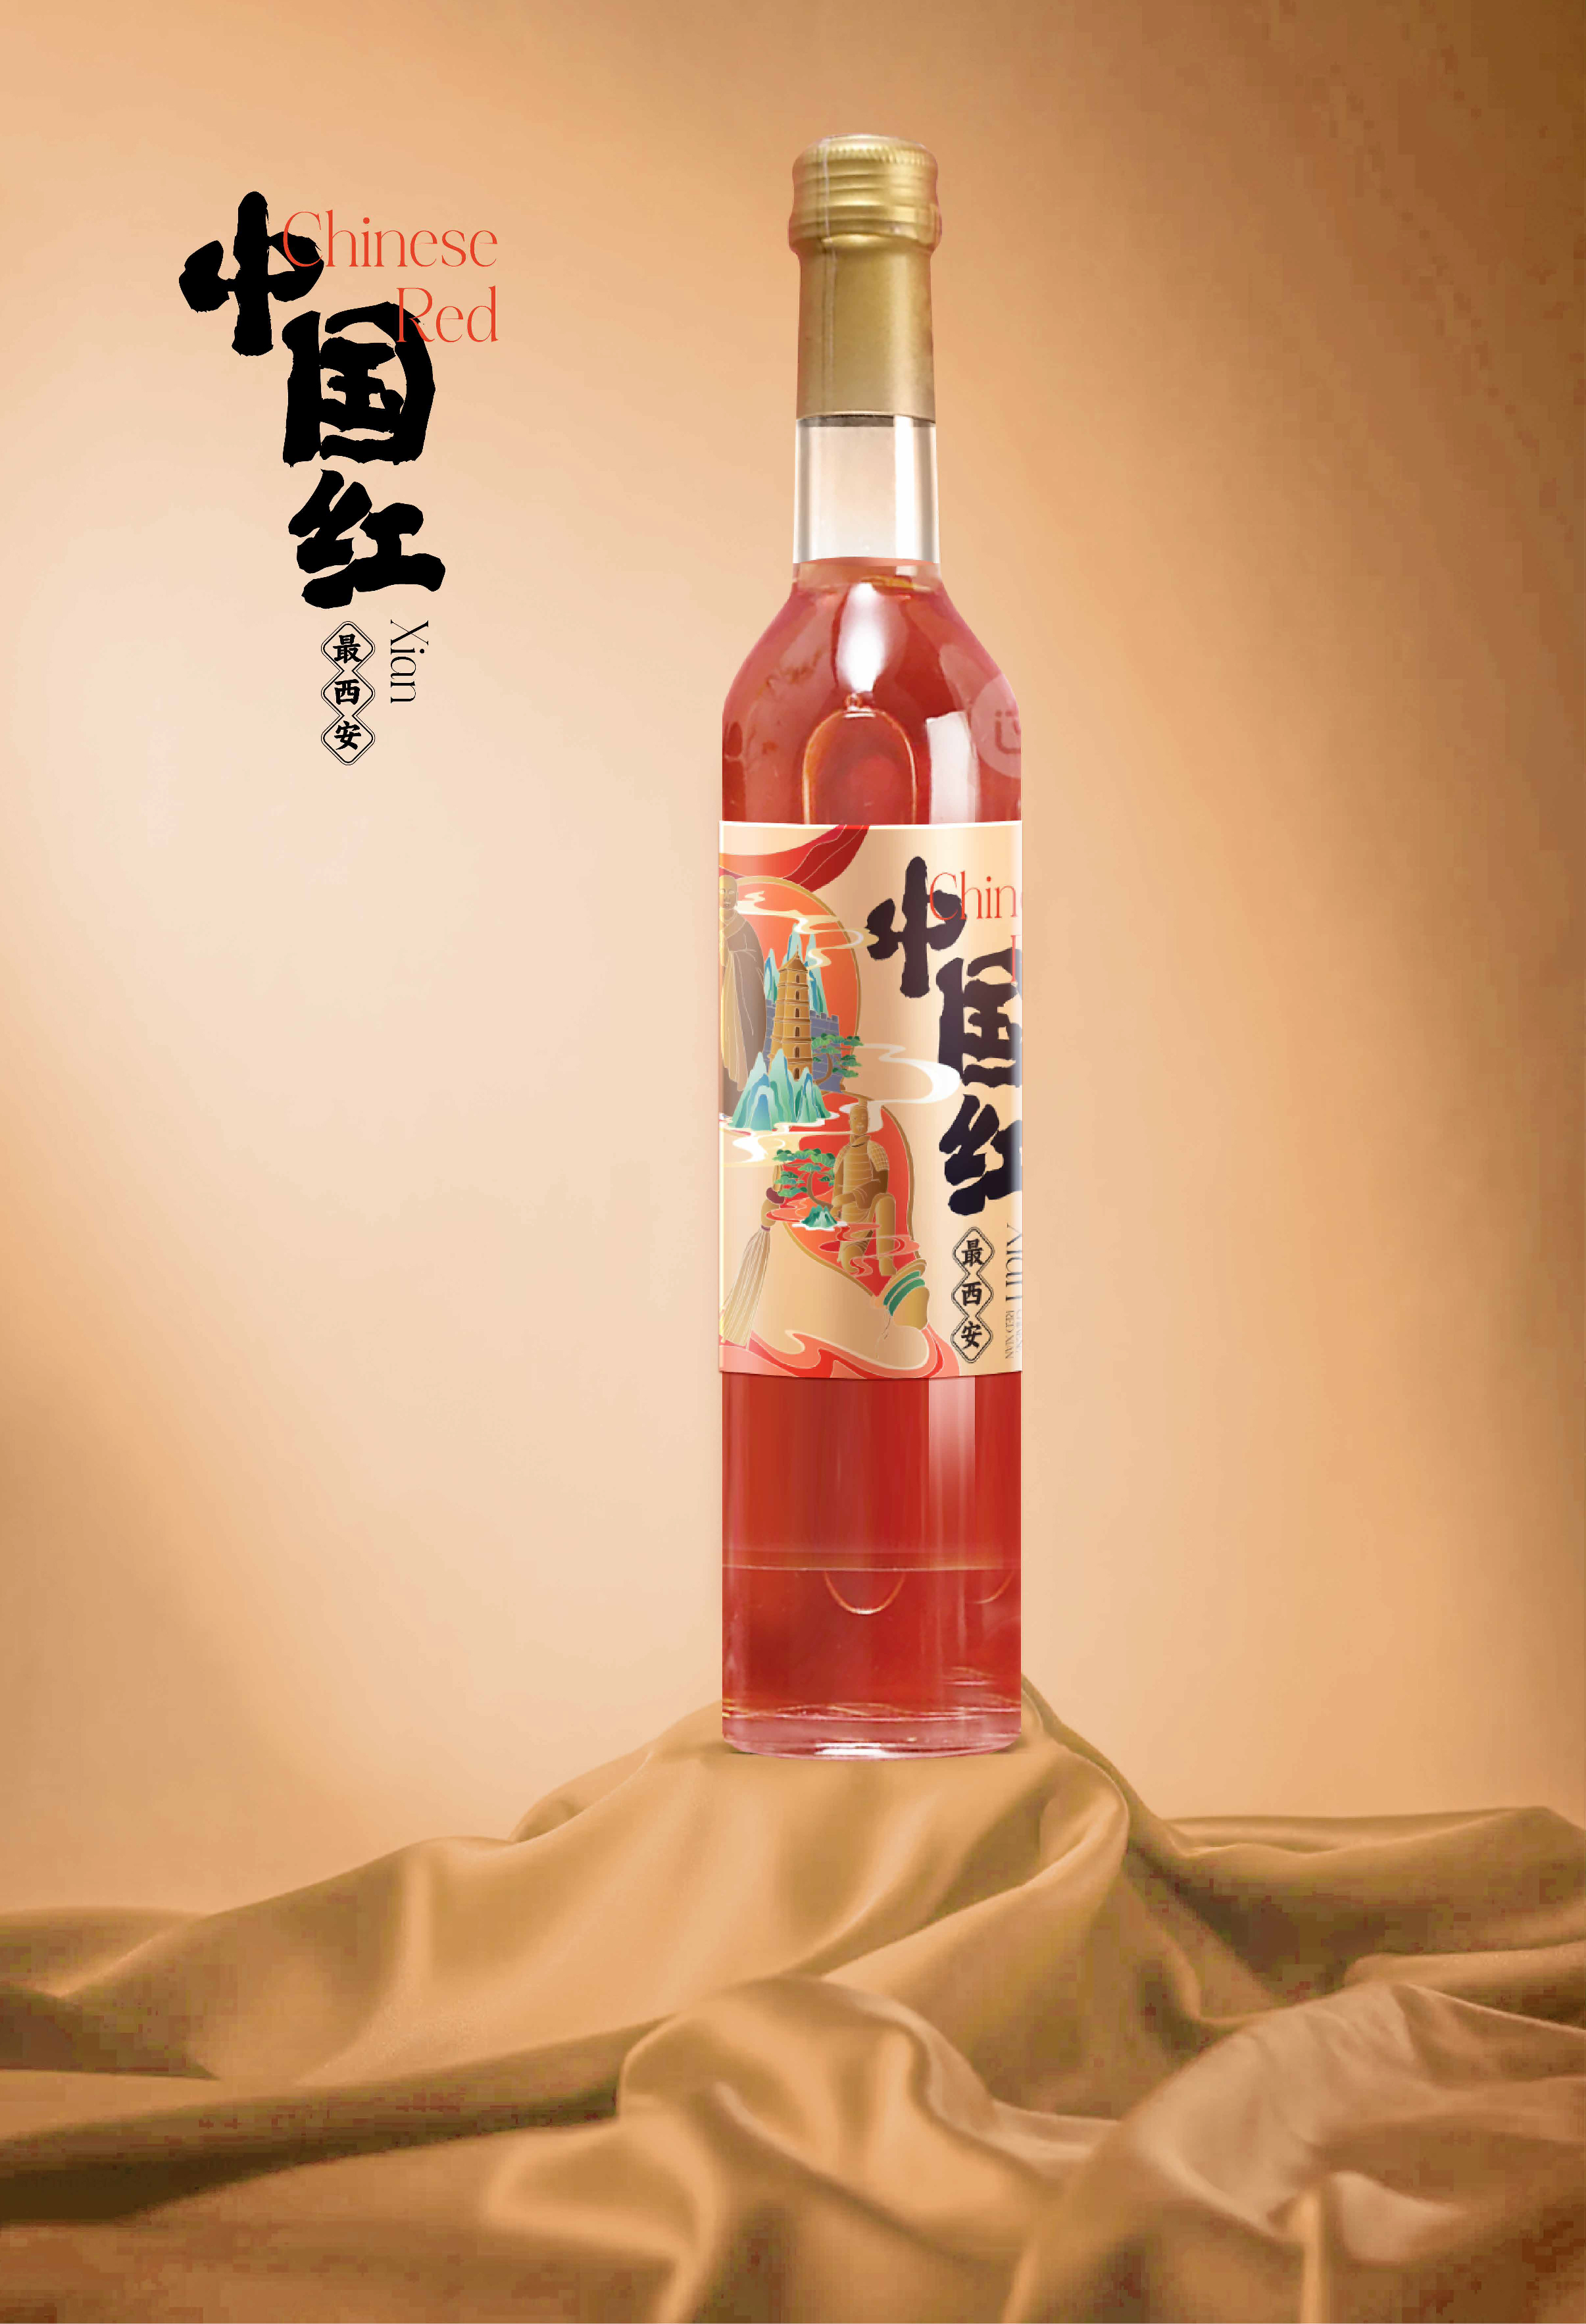 中国红最西安葡萄酒包装设计插画瓶贴设计